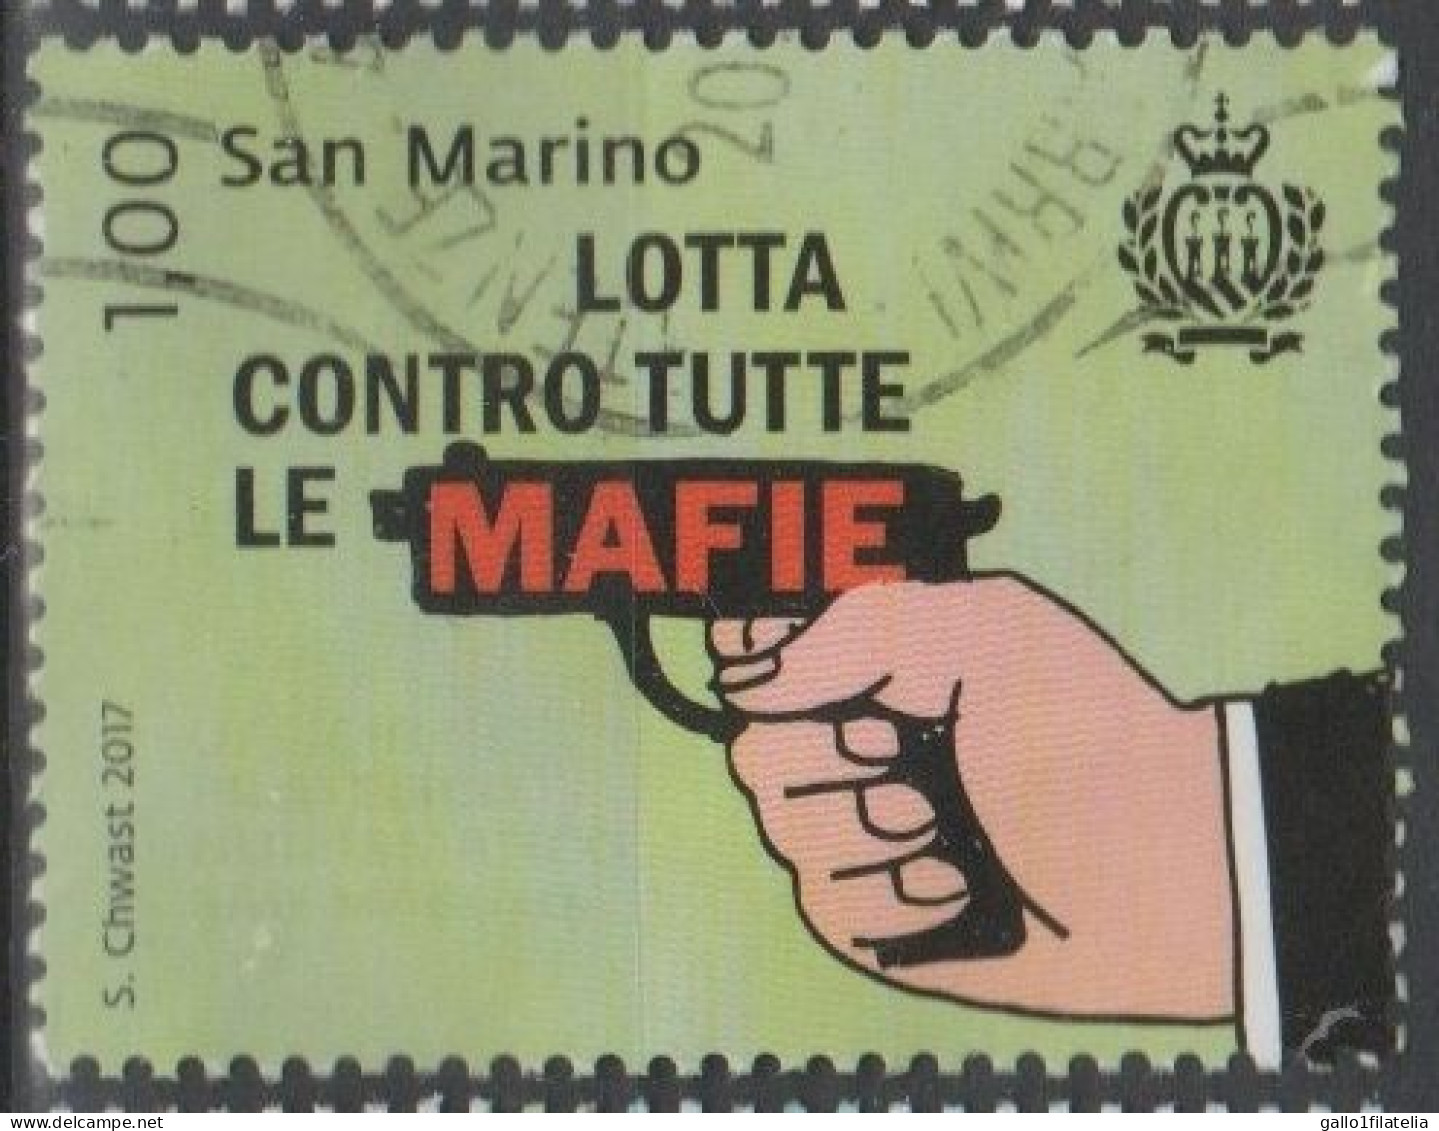 2017 - SAN MARINO - LOTTA CONTRO TUTTE LE MAFIE / FIGHT AGAINST ALL MAFIAS - USATO - Usati